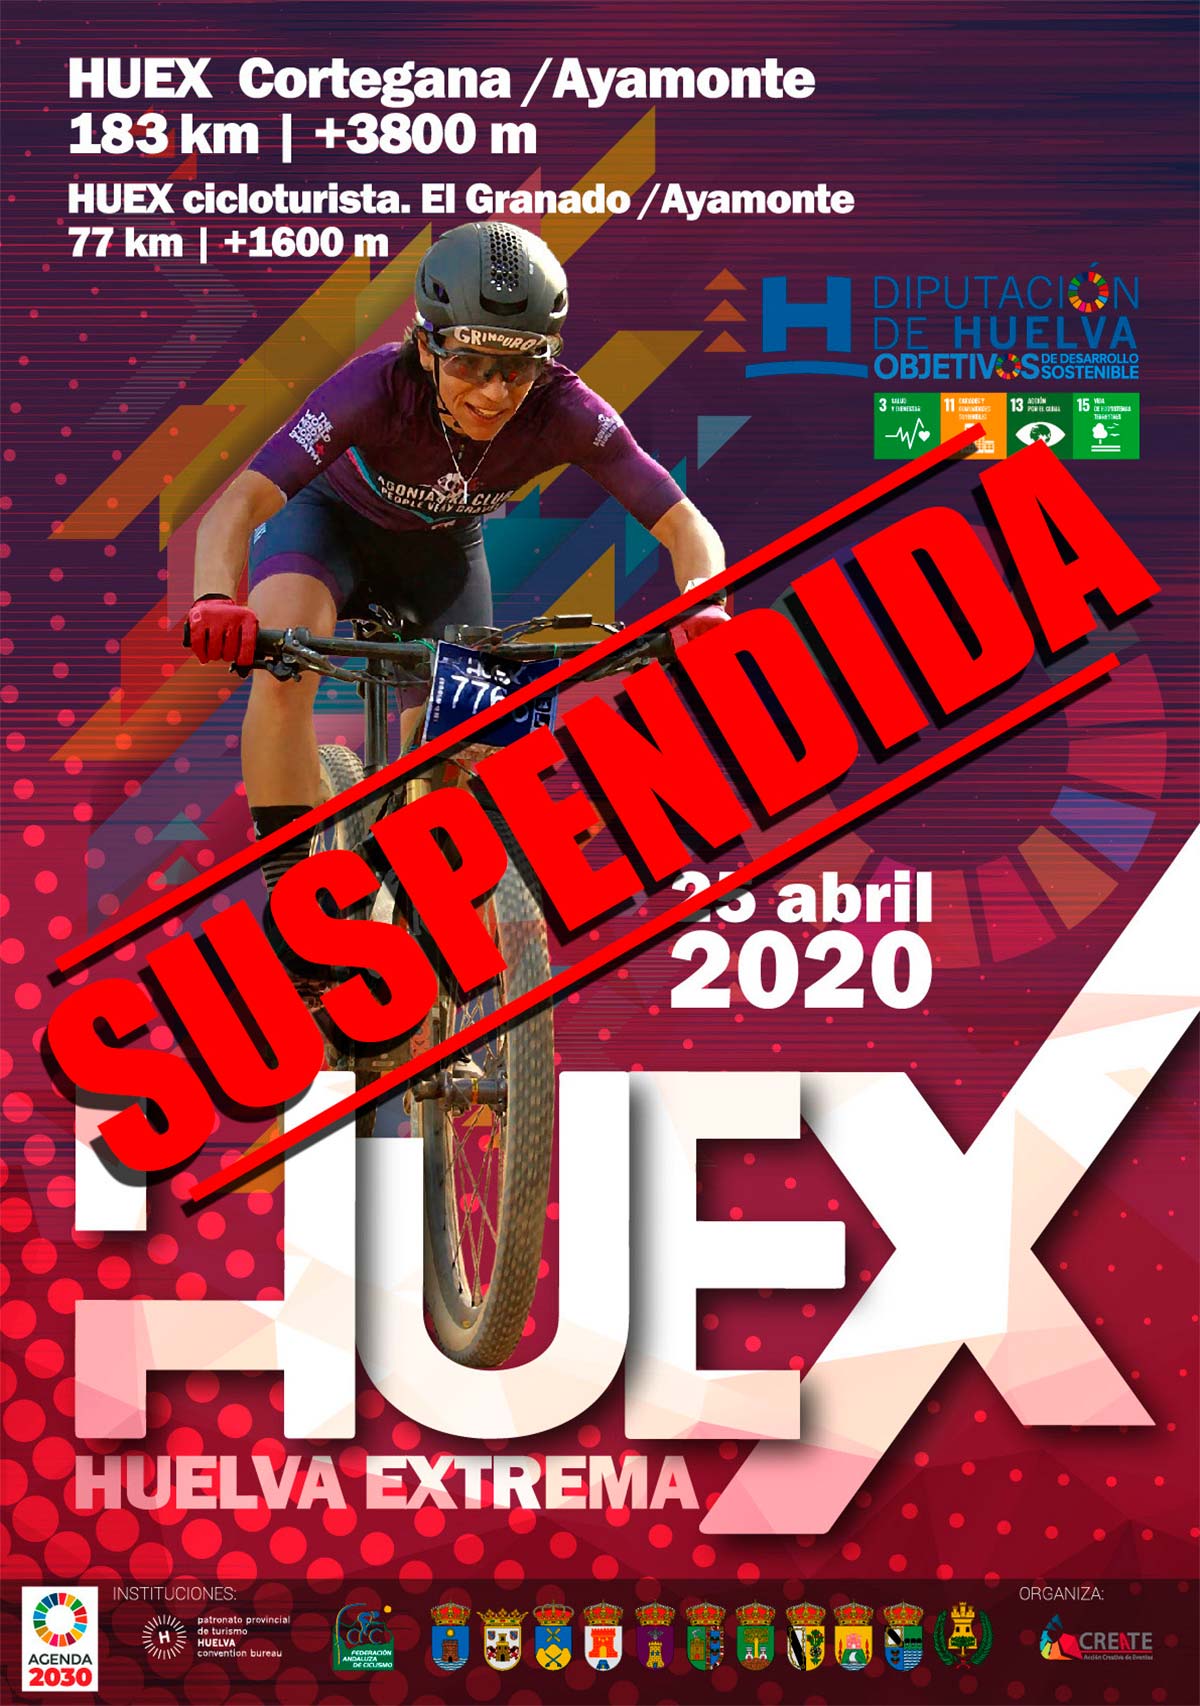 La Huelva Extrema 2020 se suspende, no habrá edición hasta el próximo año